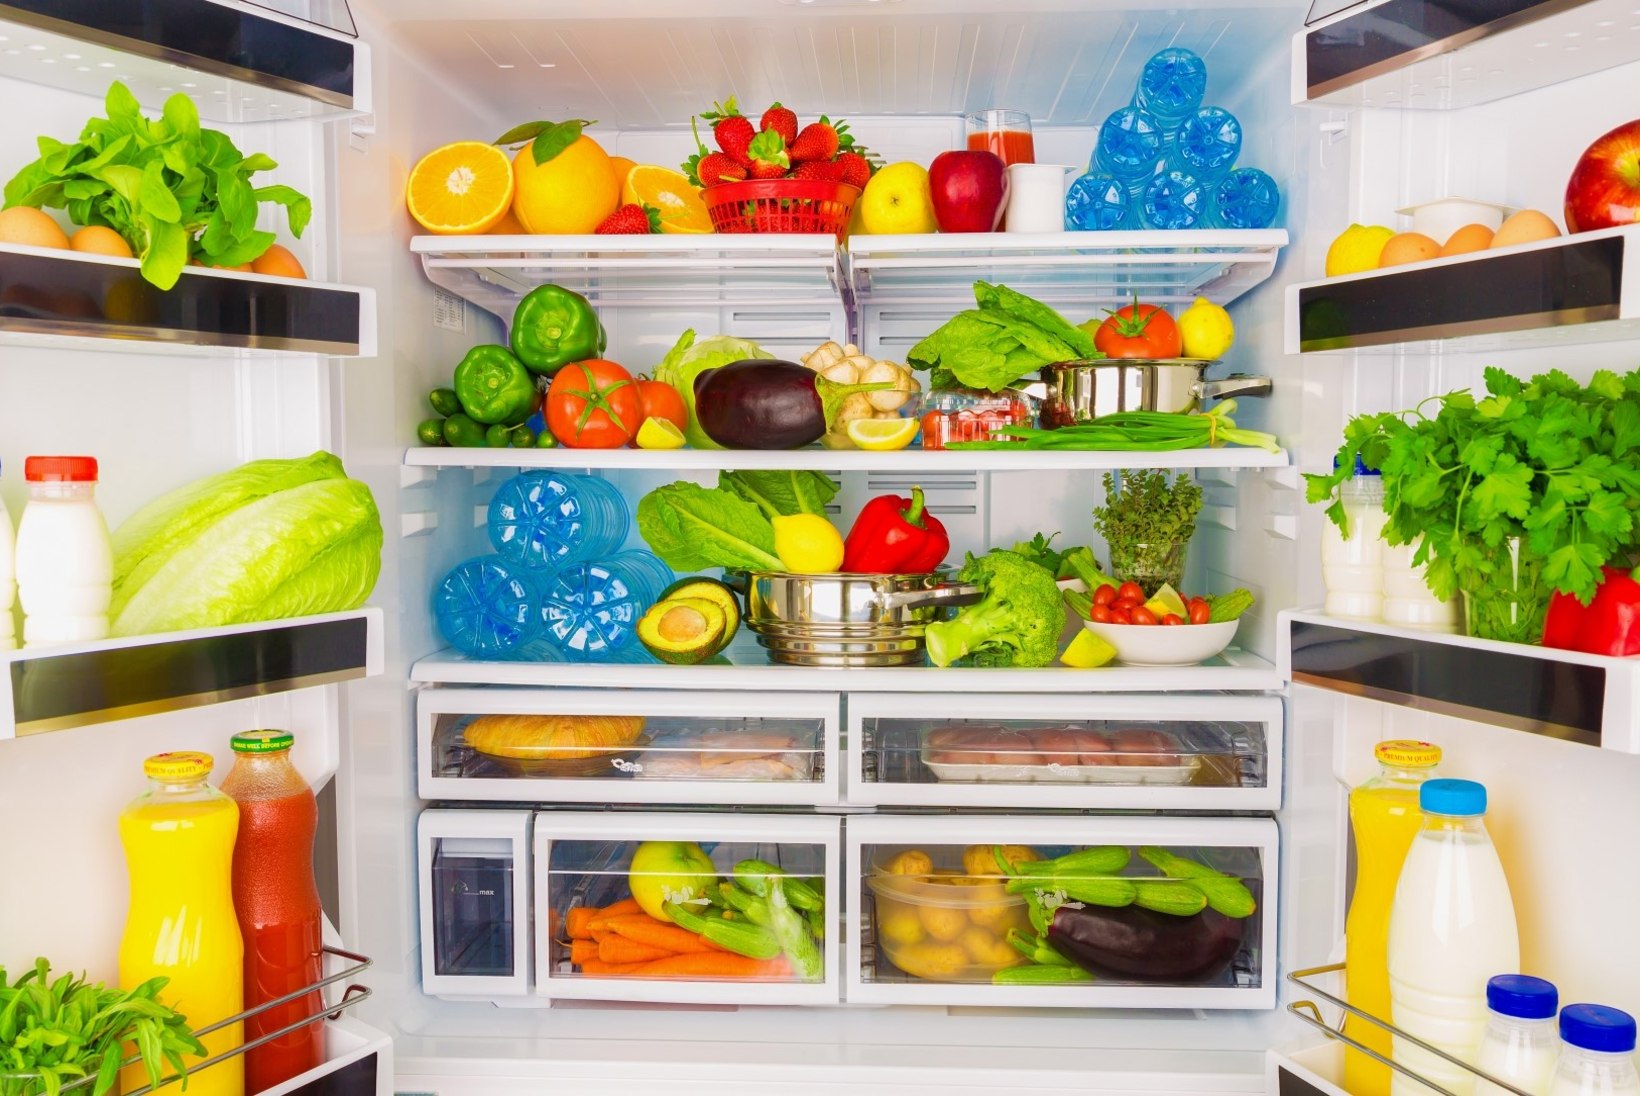 Kas toitu võib kilekottides sügavkülmutada?